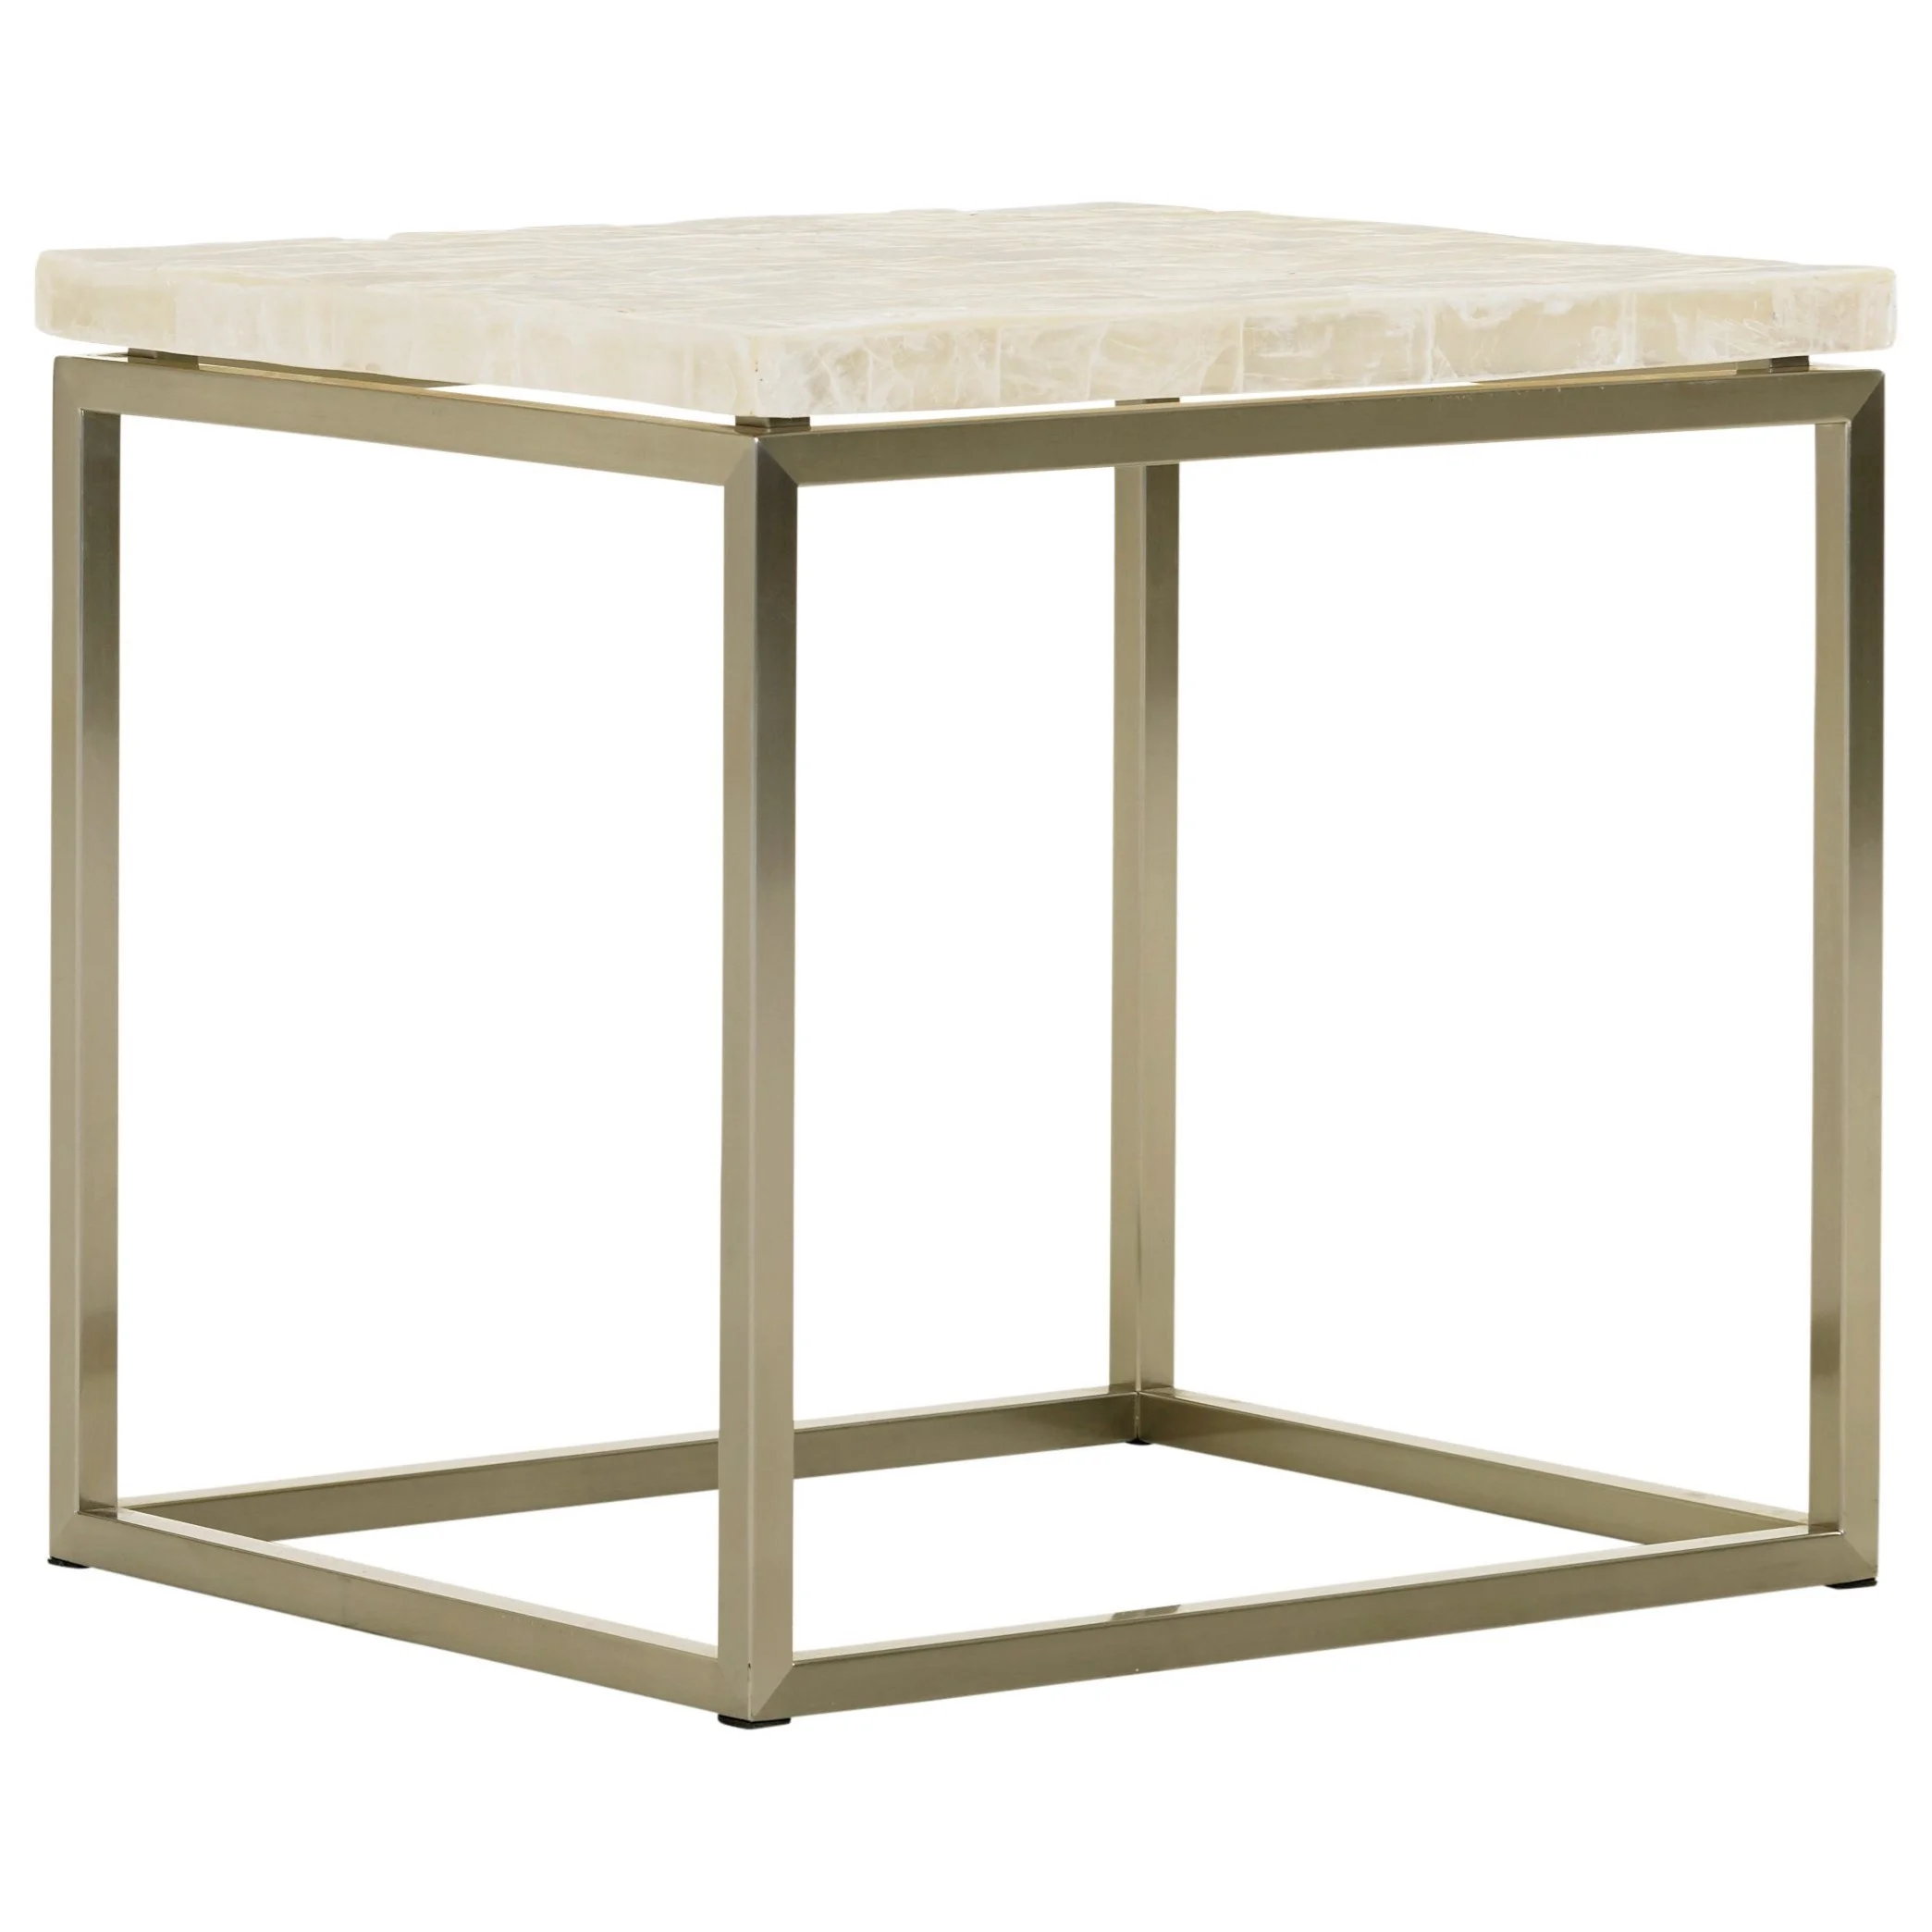 Lexington MacArthur Park 729-955C Marisol End Table with White Veracruz  Stone Top, Baer's Furniture